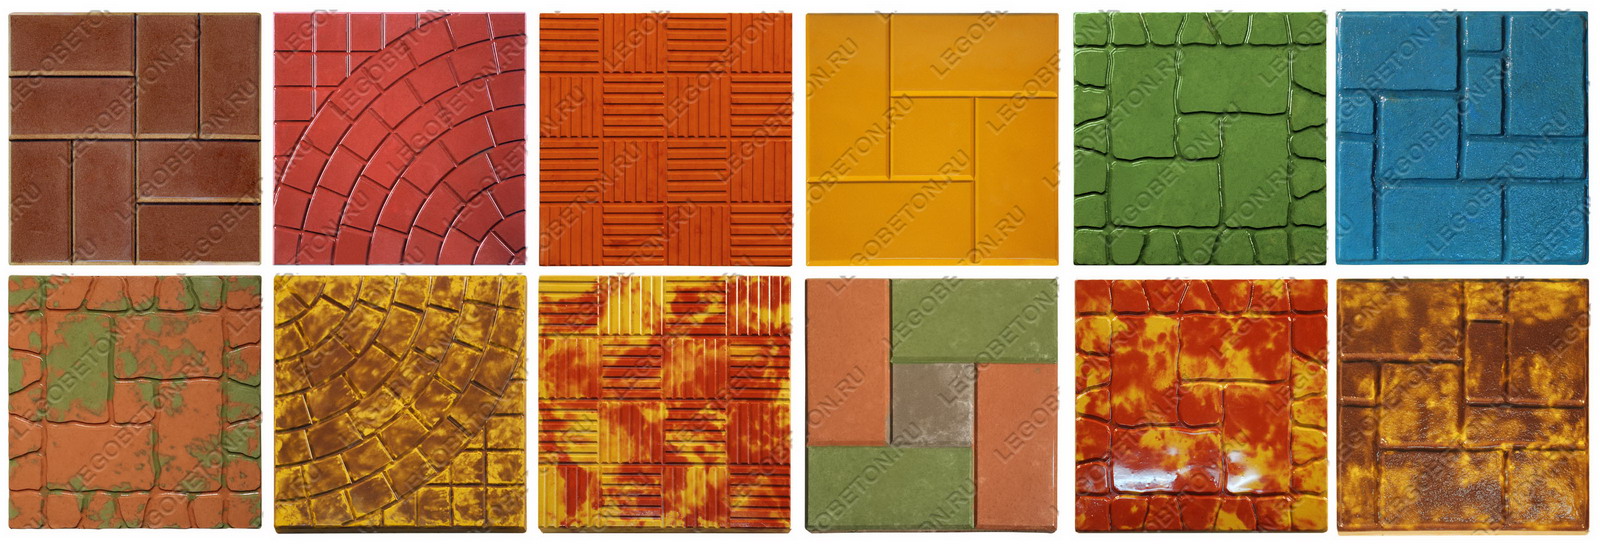 формы для изготовления тротуарной плитки, формы для плитки в интернет магазине, краситель для тротуарной плитки, окраска тротуарной плитки